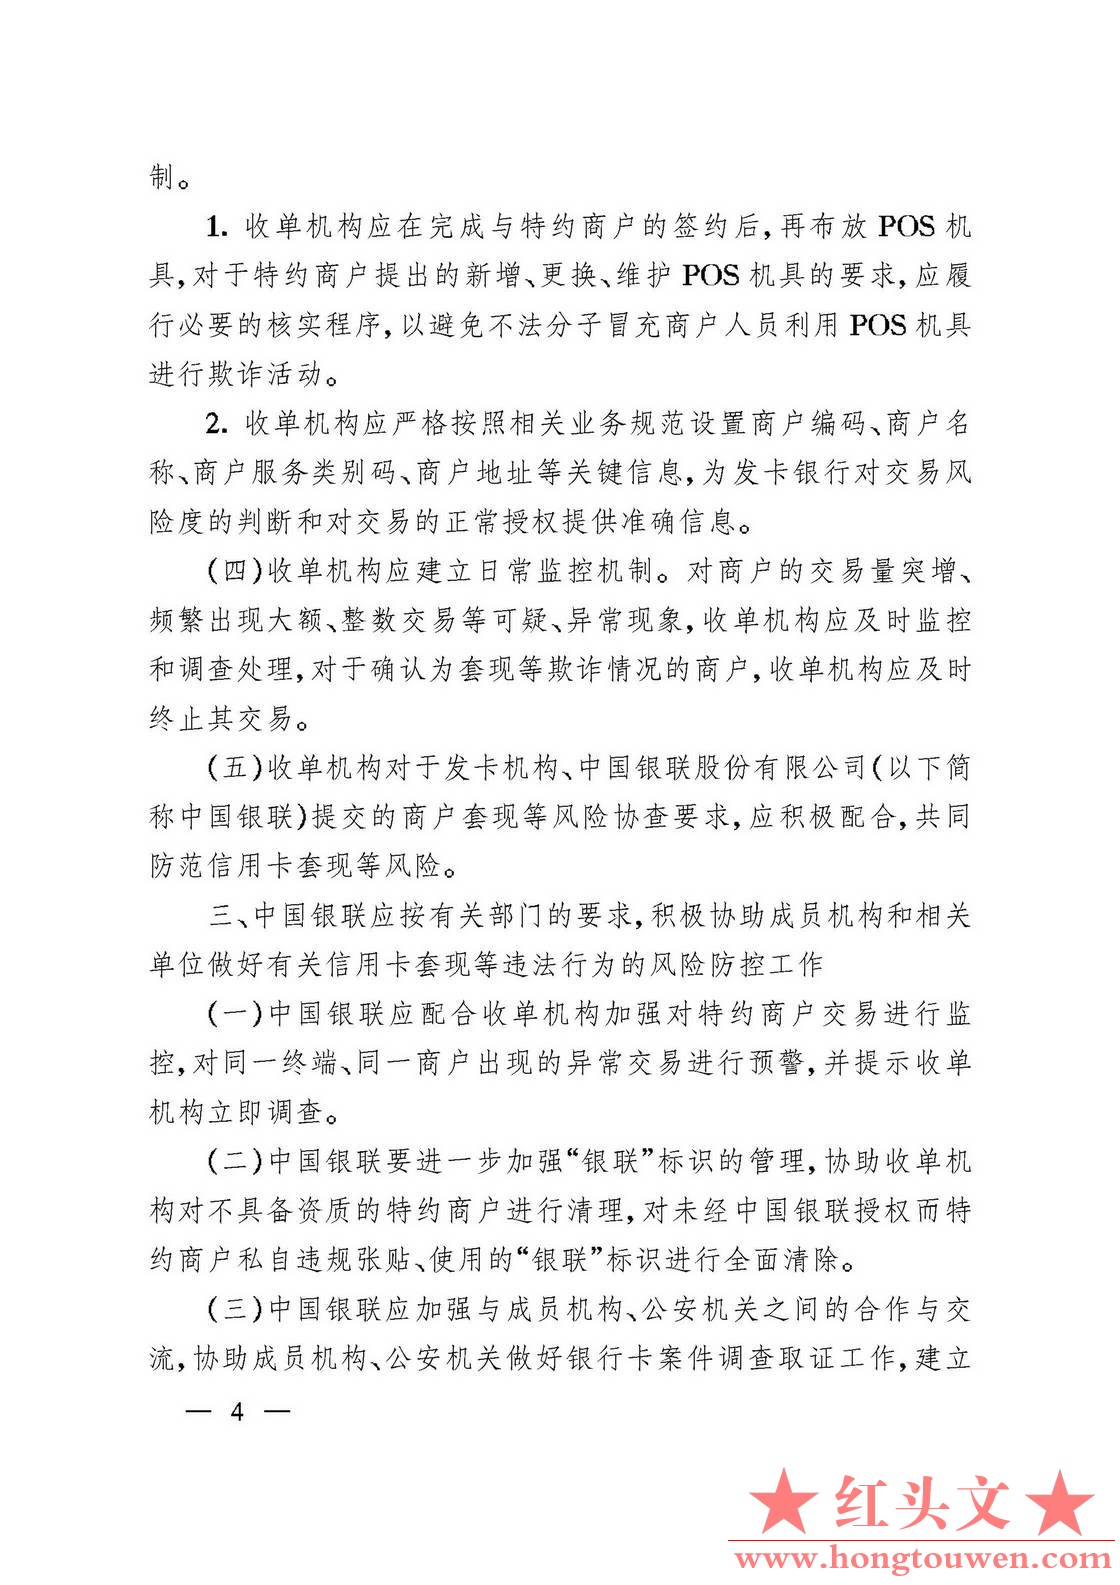 银发[2006]84号-中国人民银行 中国银行业监督管理委员会关于防范信用卡风险有关问题的.jpg